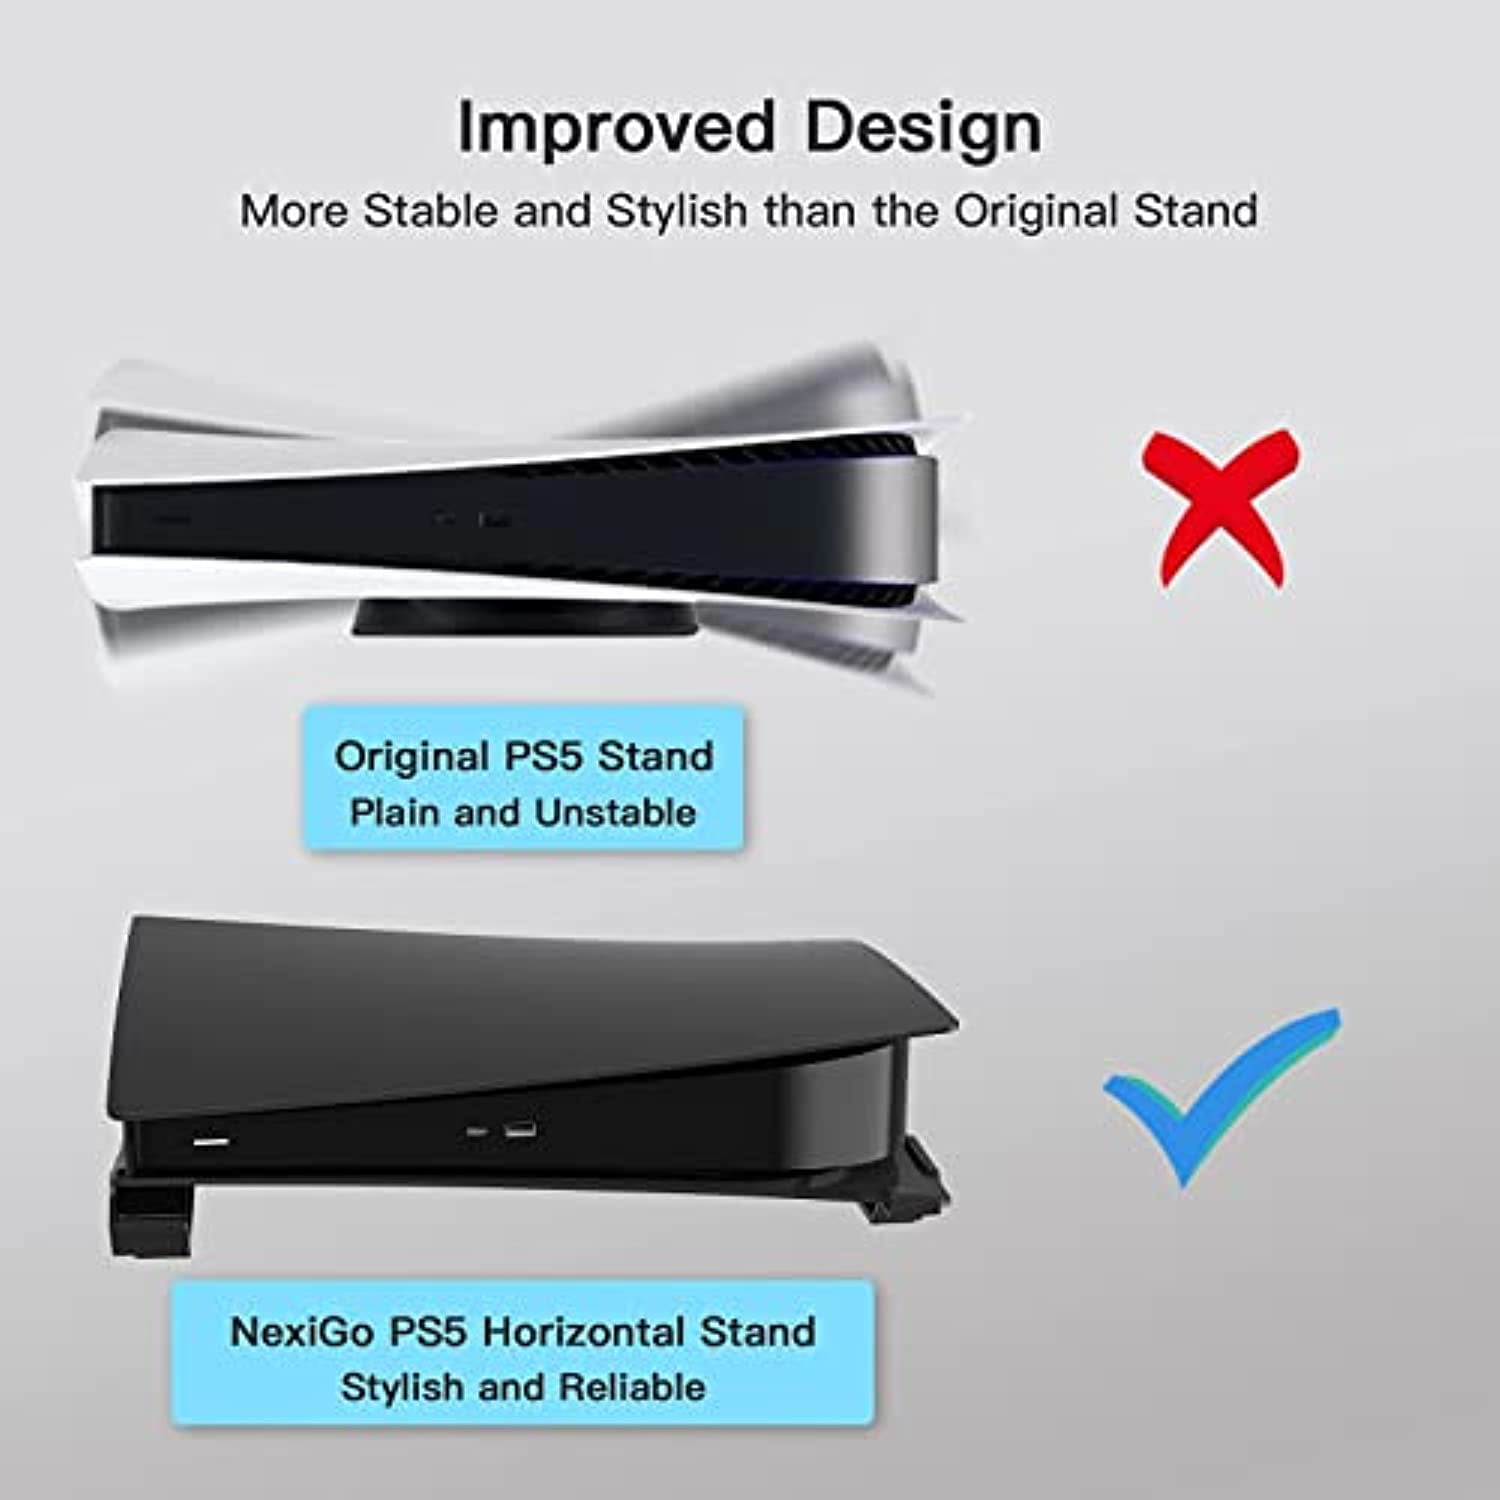 NexiGo 4-Port Usb Hub for PS5